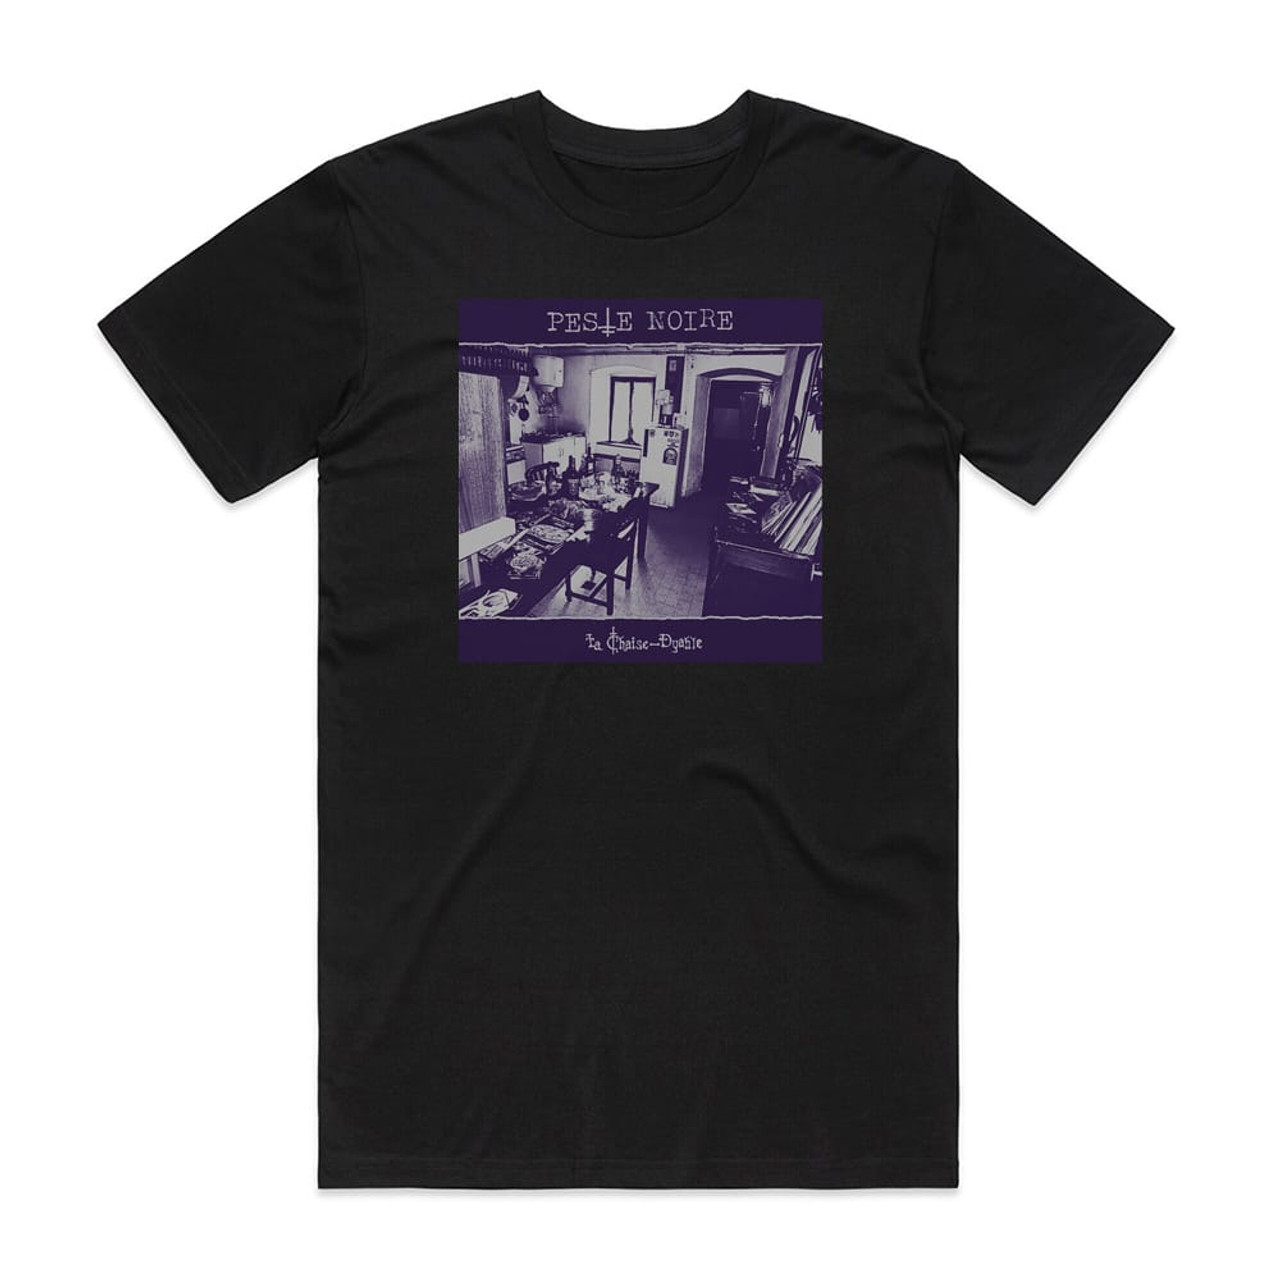 Peste Noire La Chaise Dyable Album Cover T-Shirt Black